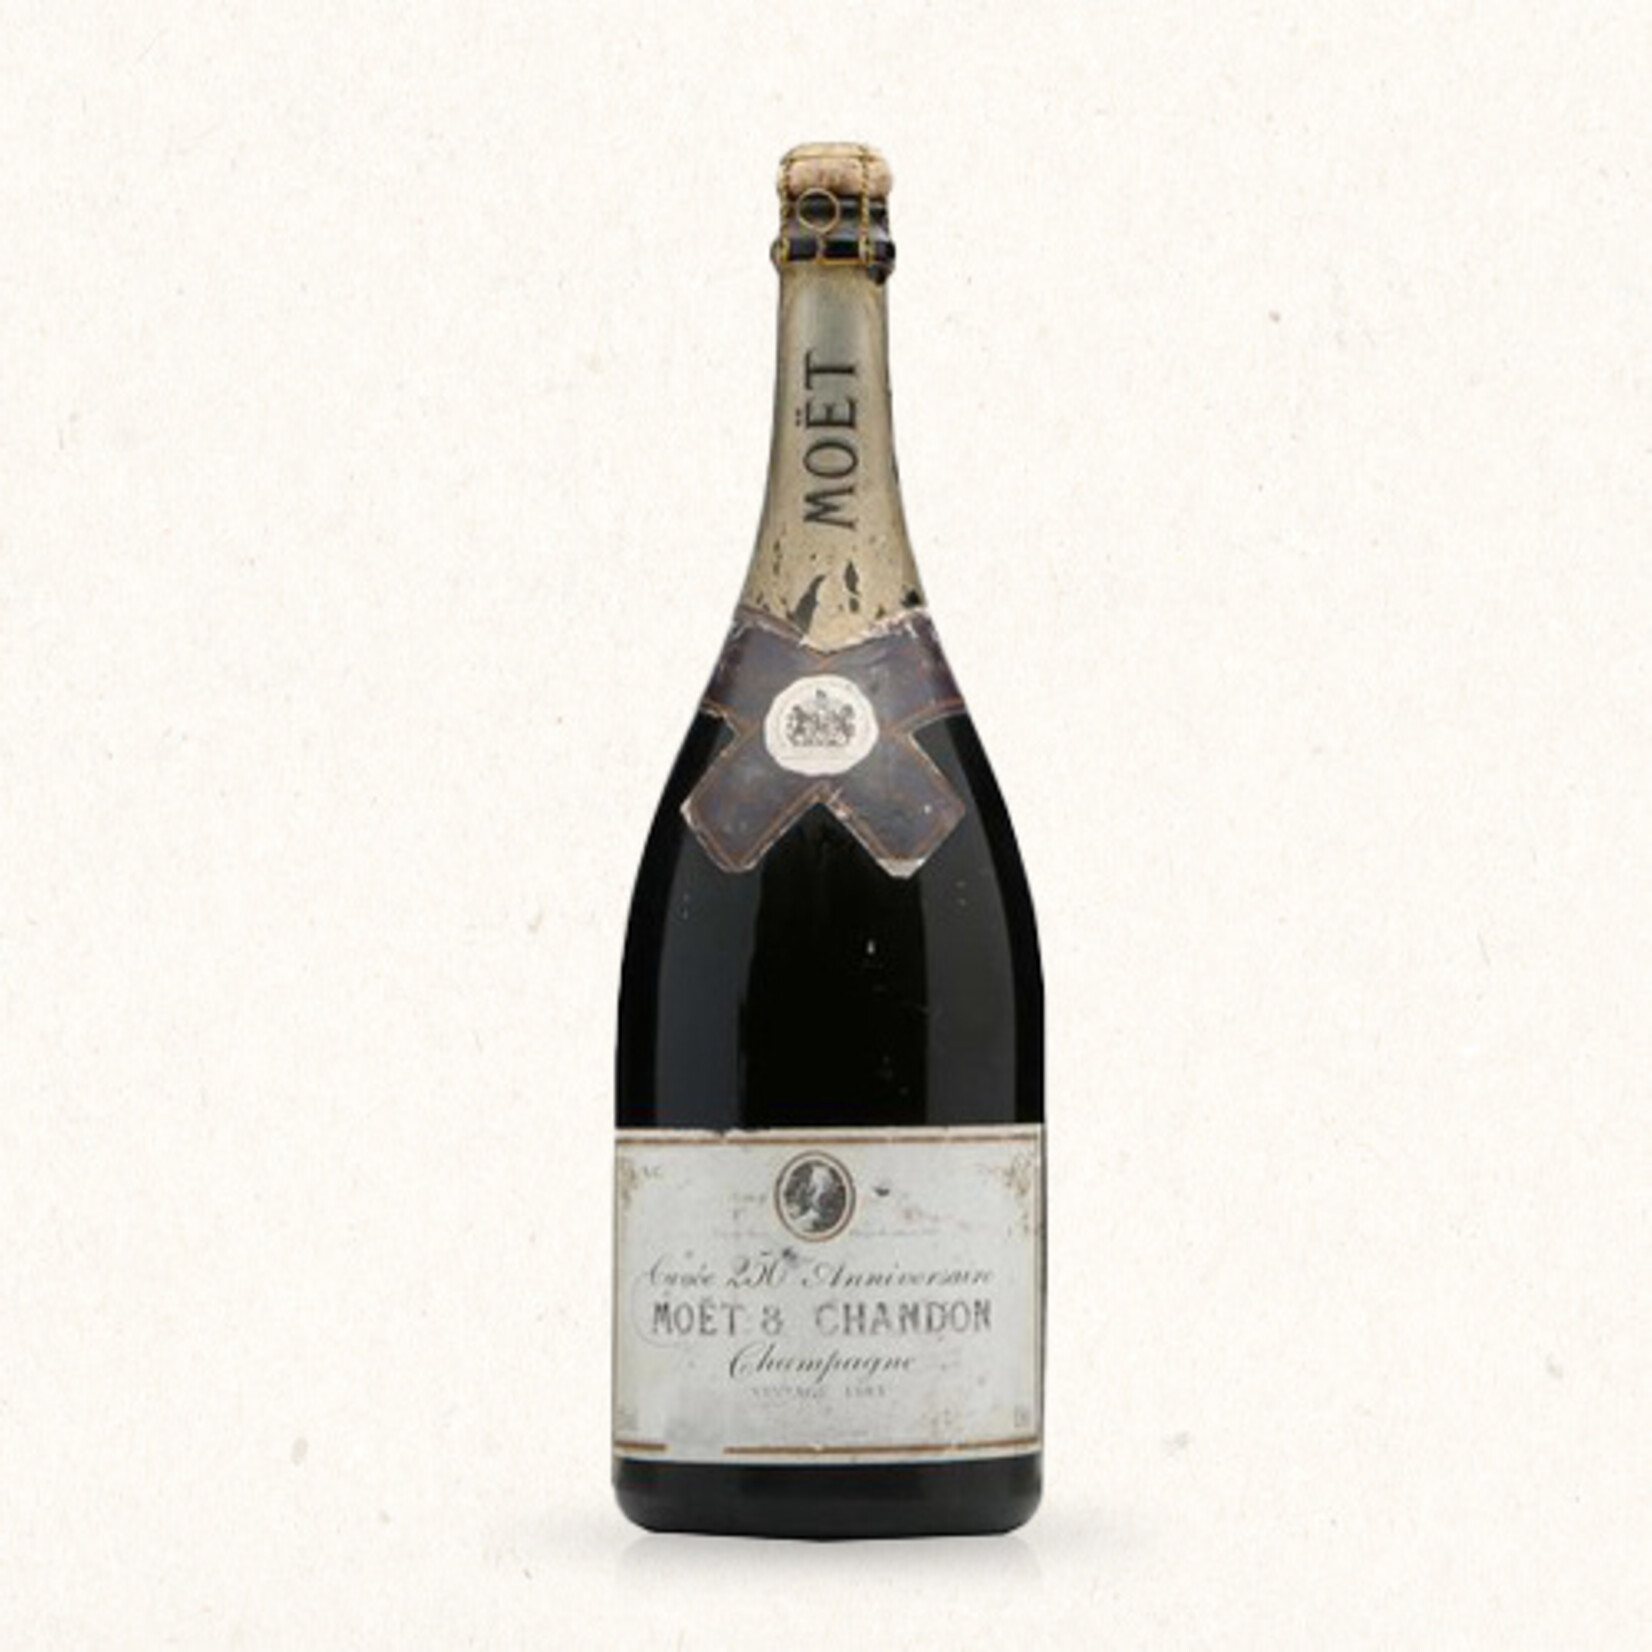 Moët & Chandon Vintage 1983 Cuvée 250ème anniversaire magnum (1,5 liter)